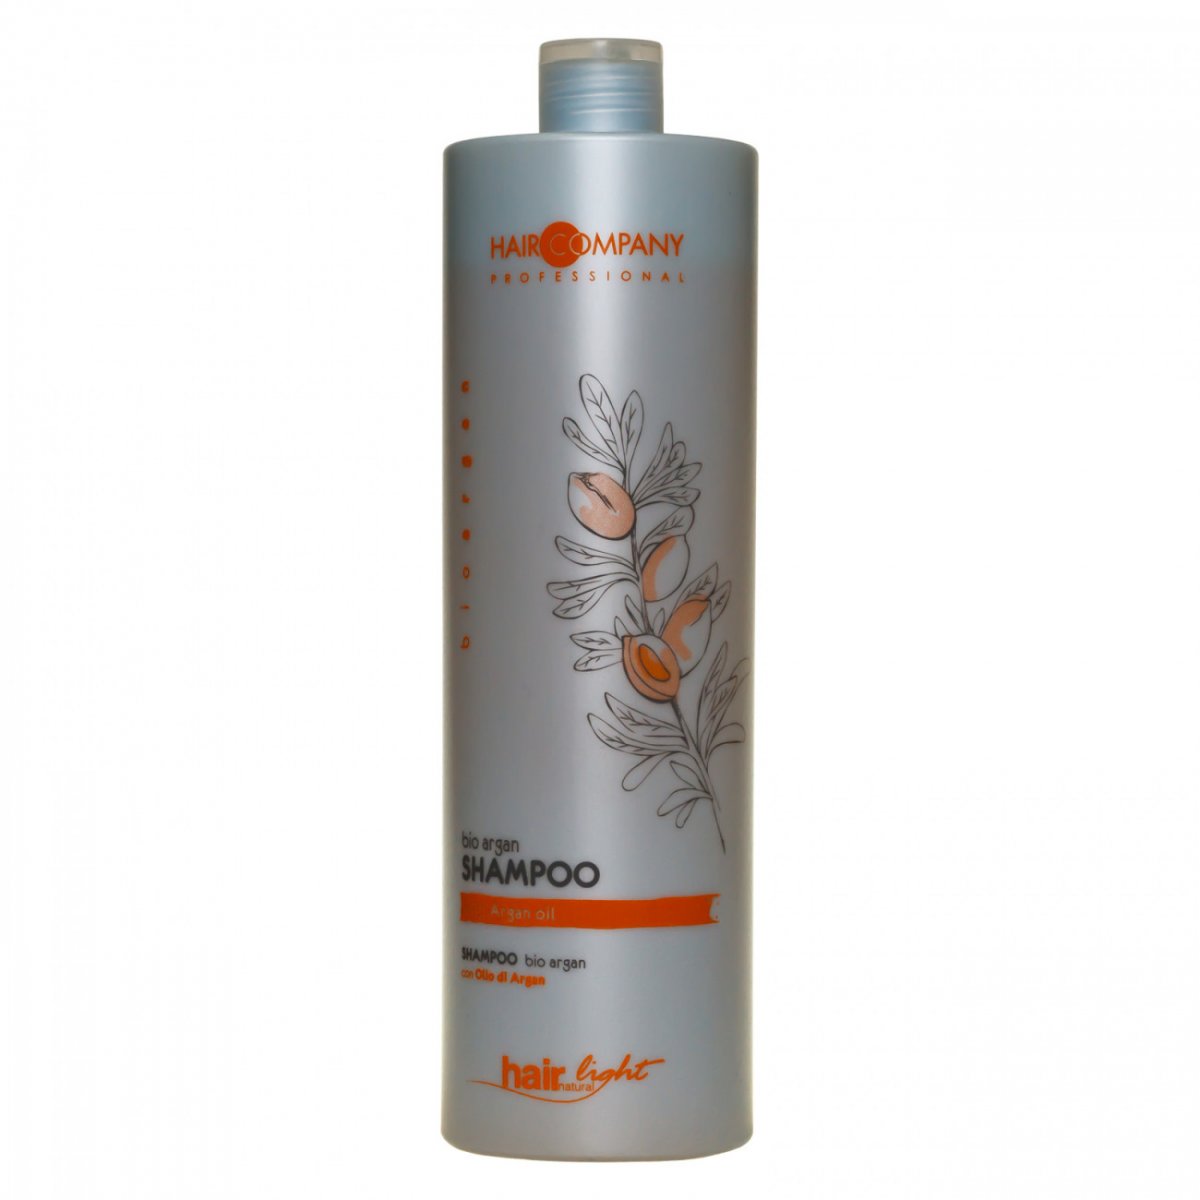 Купить Hair Company Professional Light Bio Argan Shampoo - Шампунь для волос с био маслом Арганы 1000 мл, Hair Company Professional (Италия)